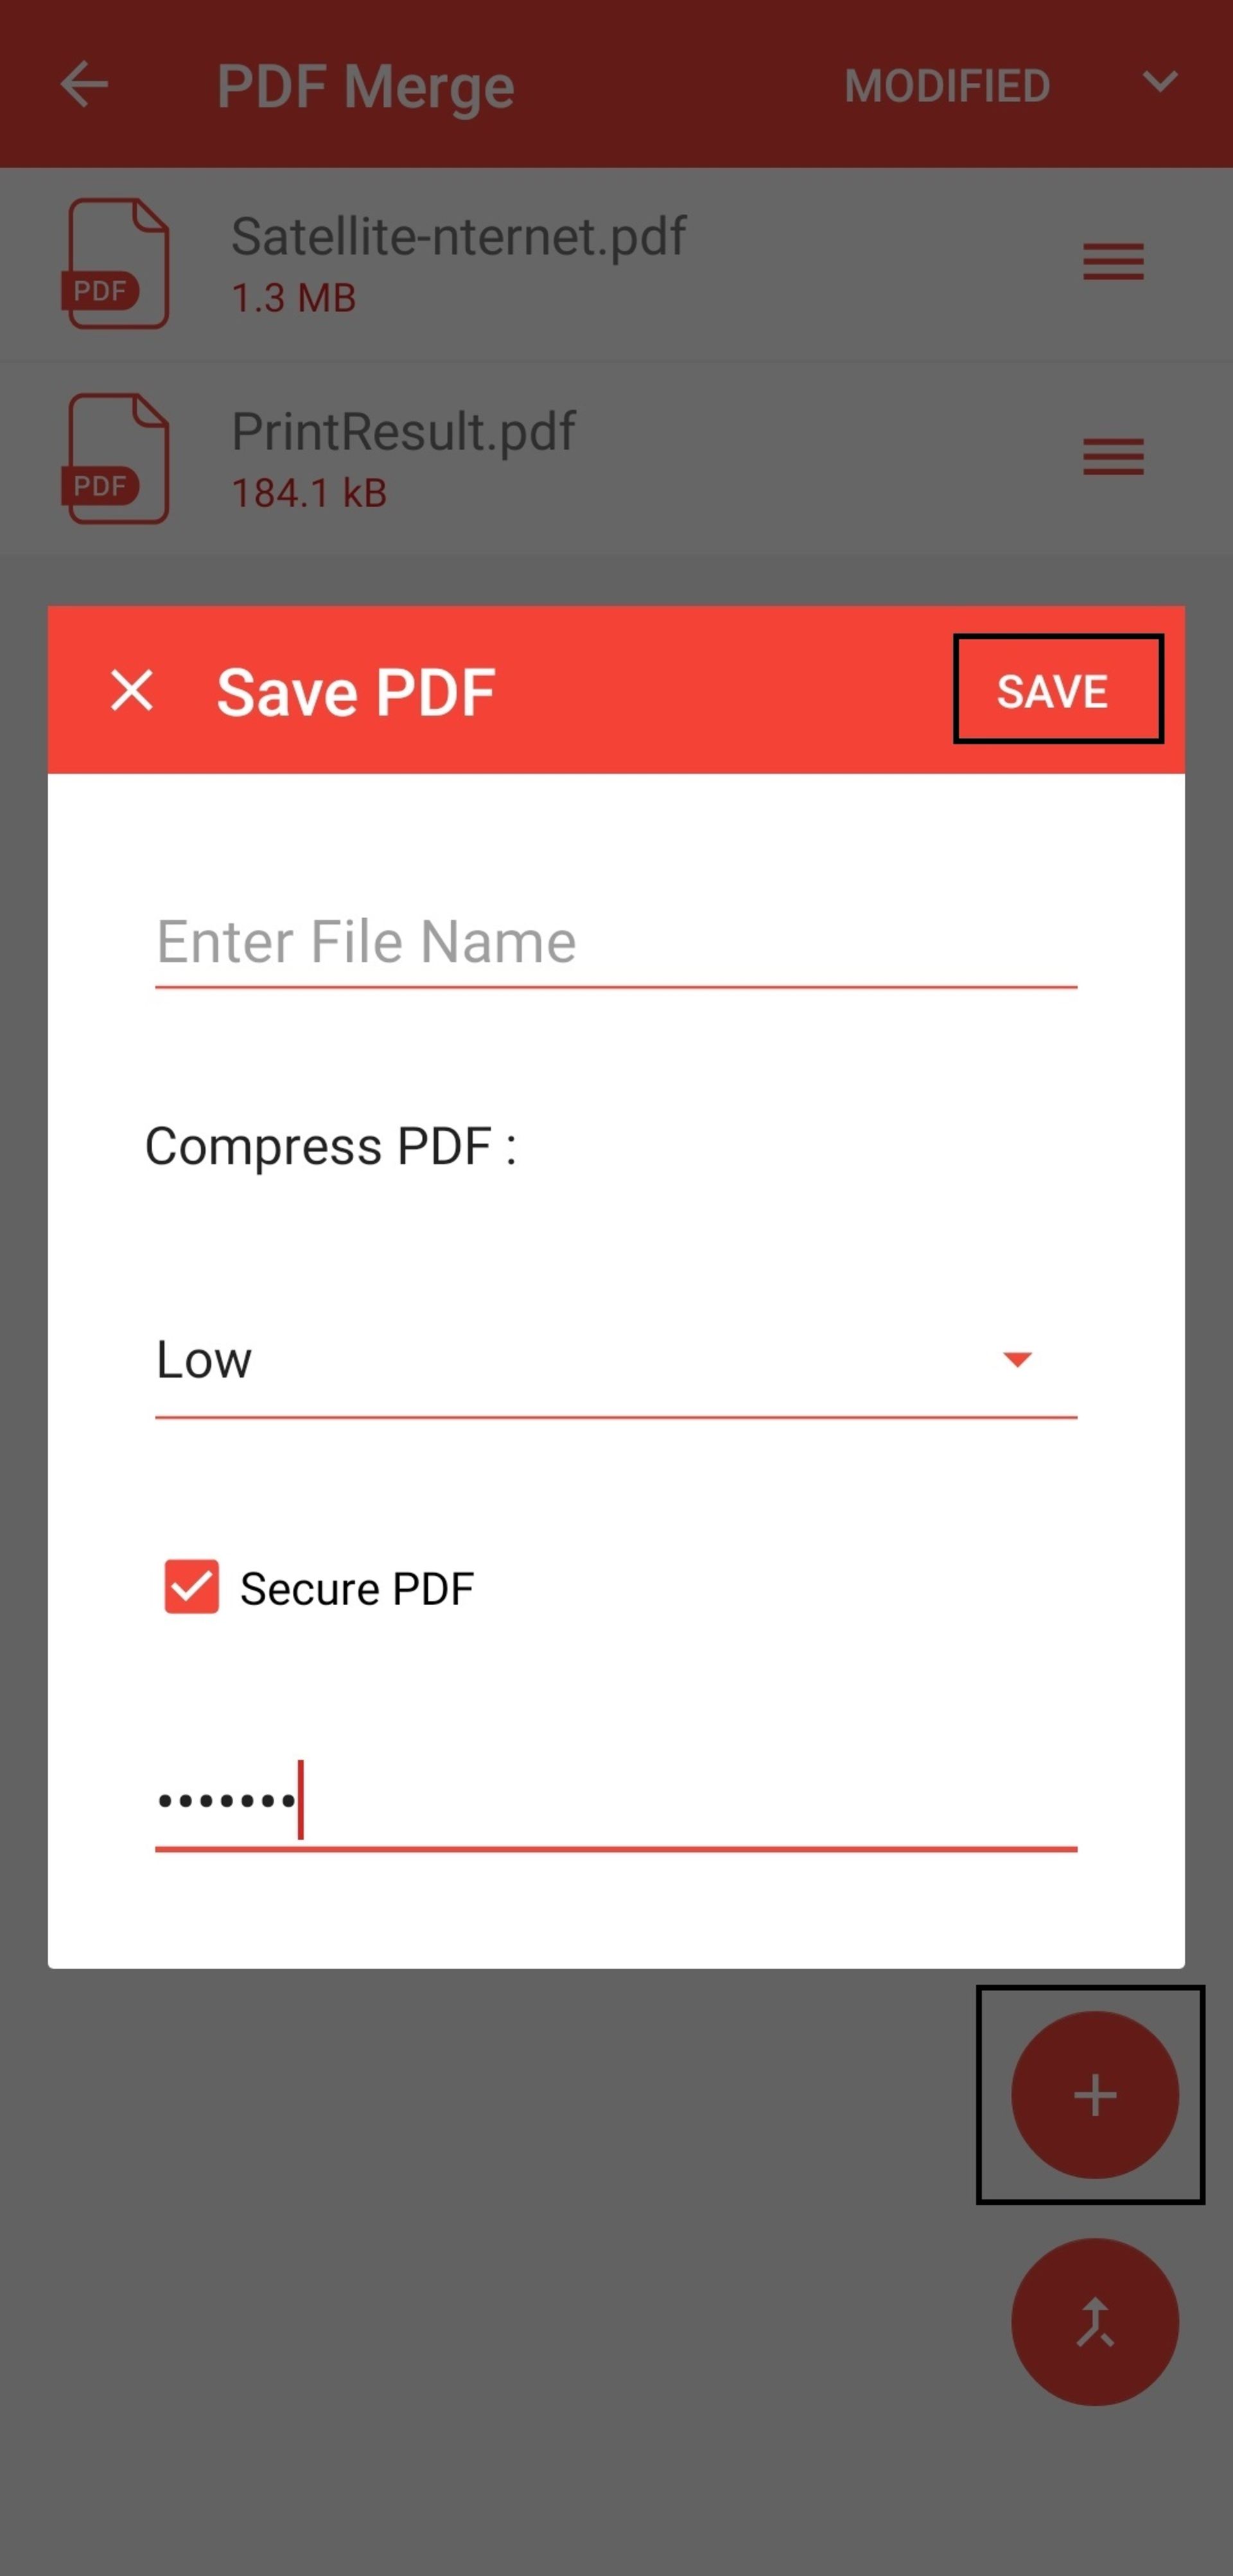 ۳-ادغام چند فایل PDF در اندروید با برنامه PDF Merge